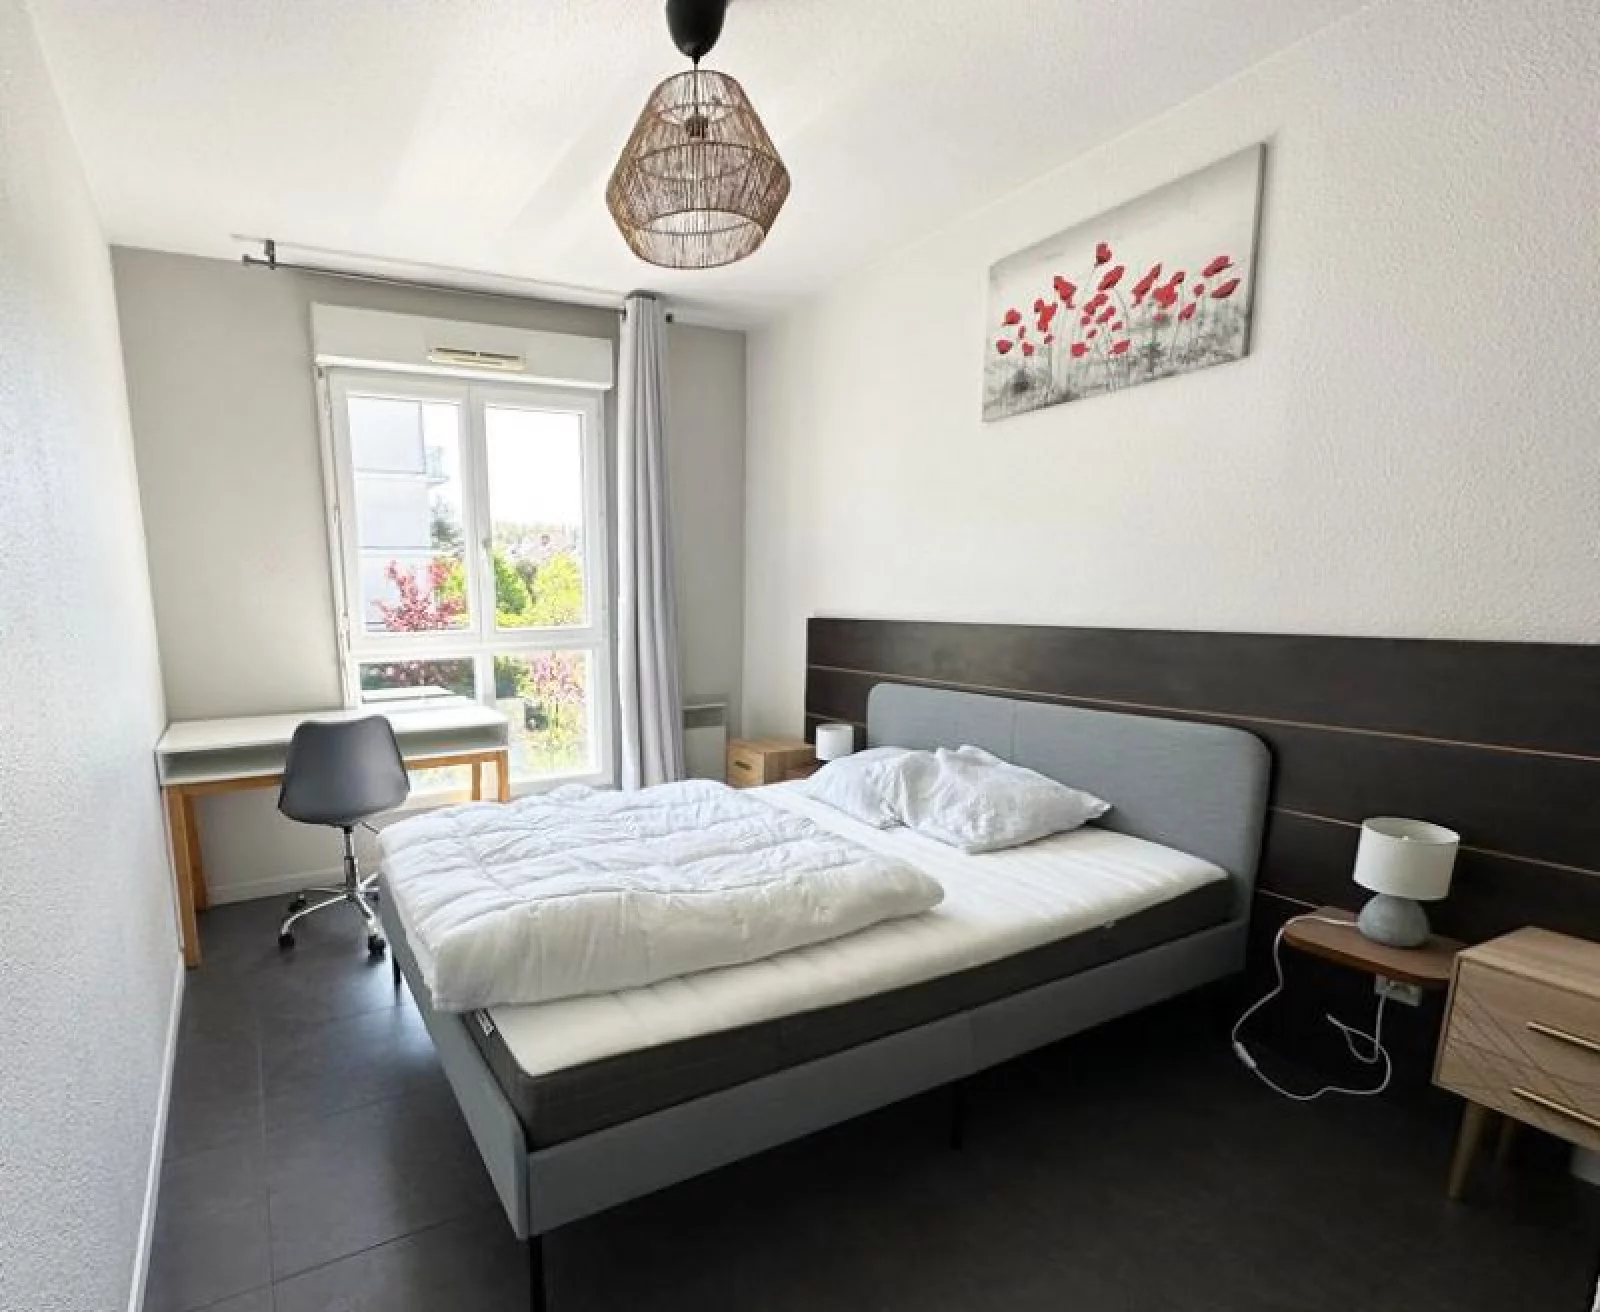 Location appartement duplex meublé 3 pièces 69m² (Paris Est / Bry sur Marne 94)